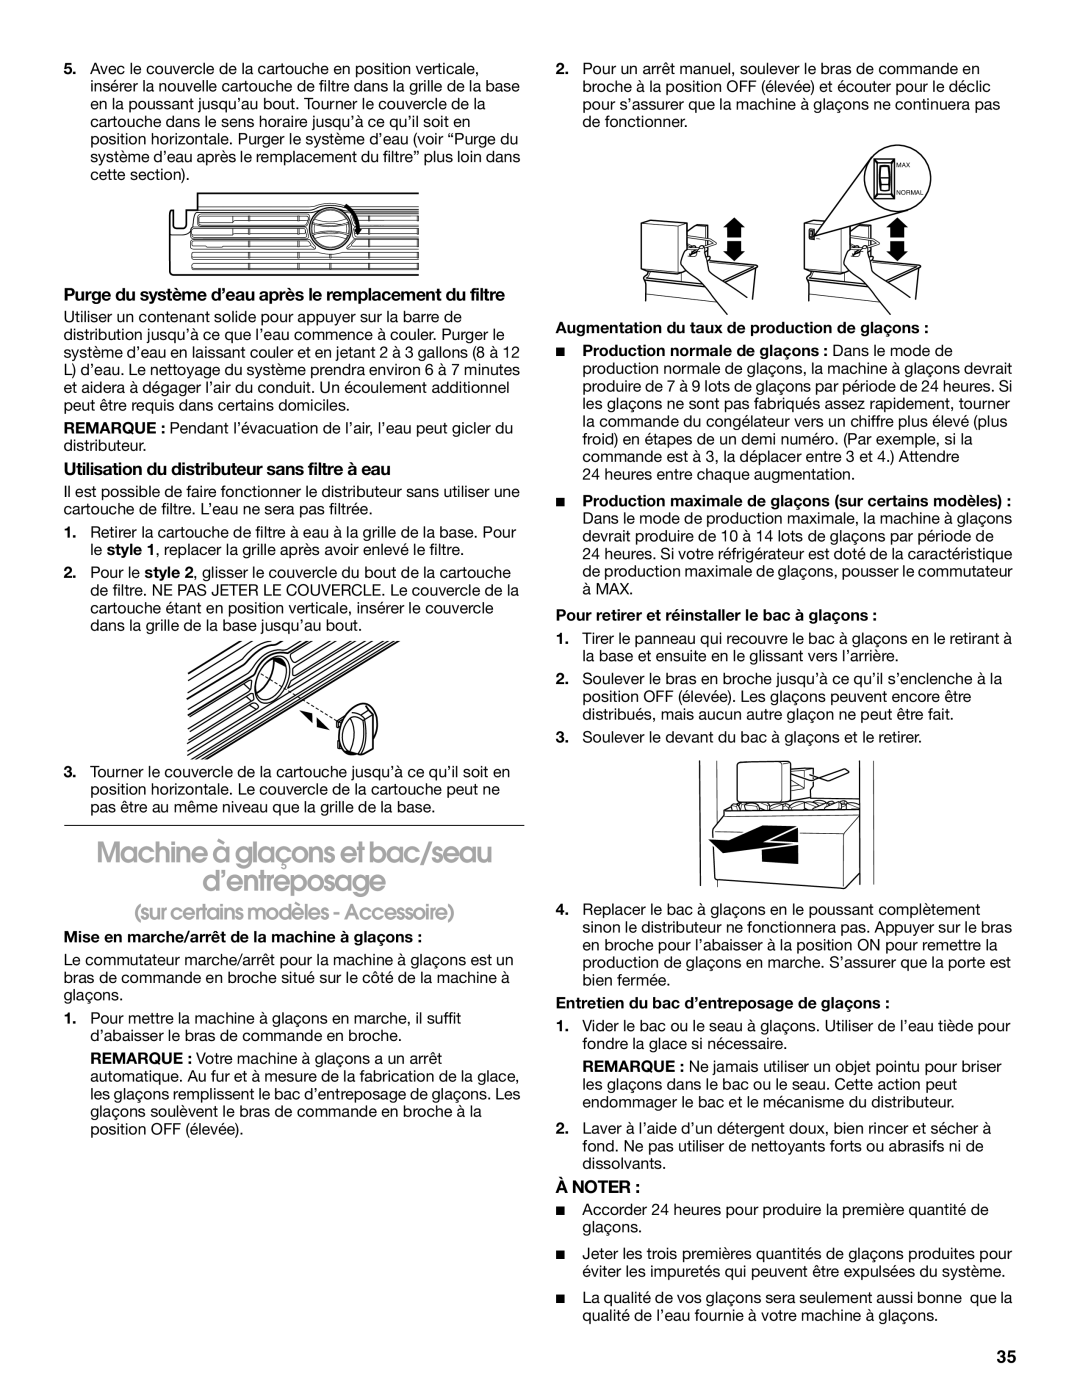 Whirlpool TS25AFXKQ00 manual Machine à glaçons et bac/seau d’entreposage, sur certains modèles - Accessoire, À Noter 